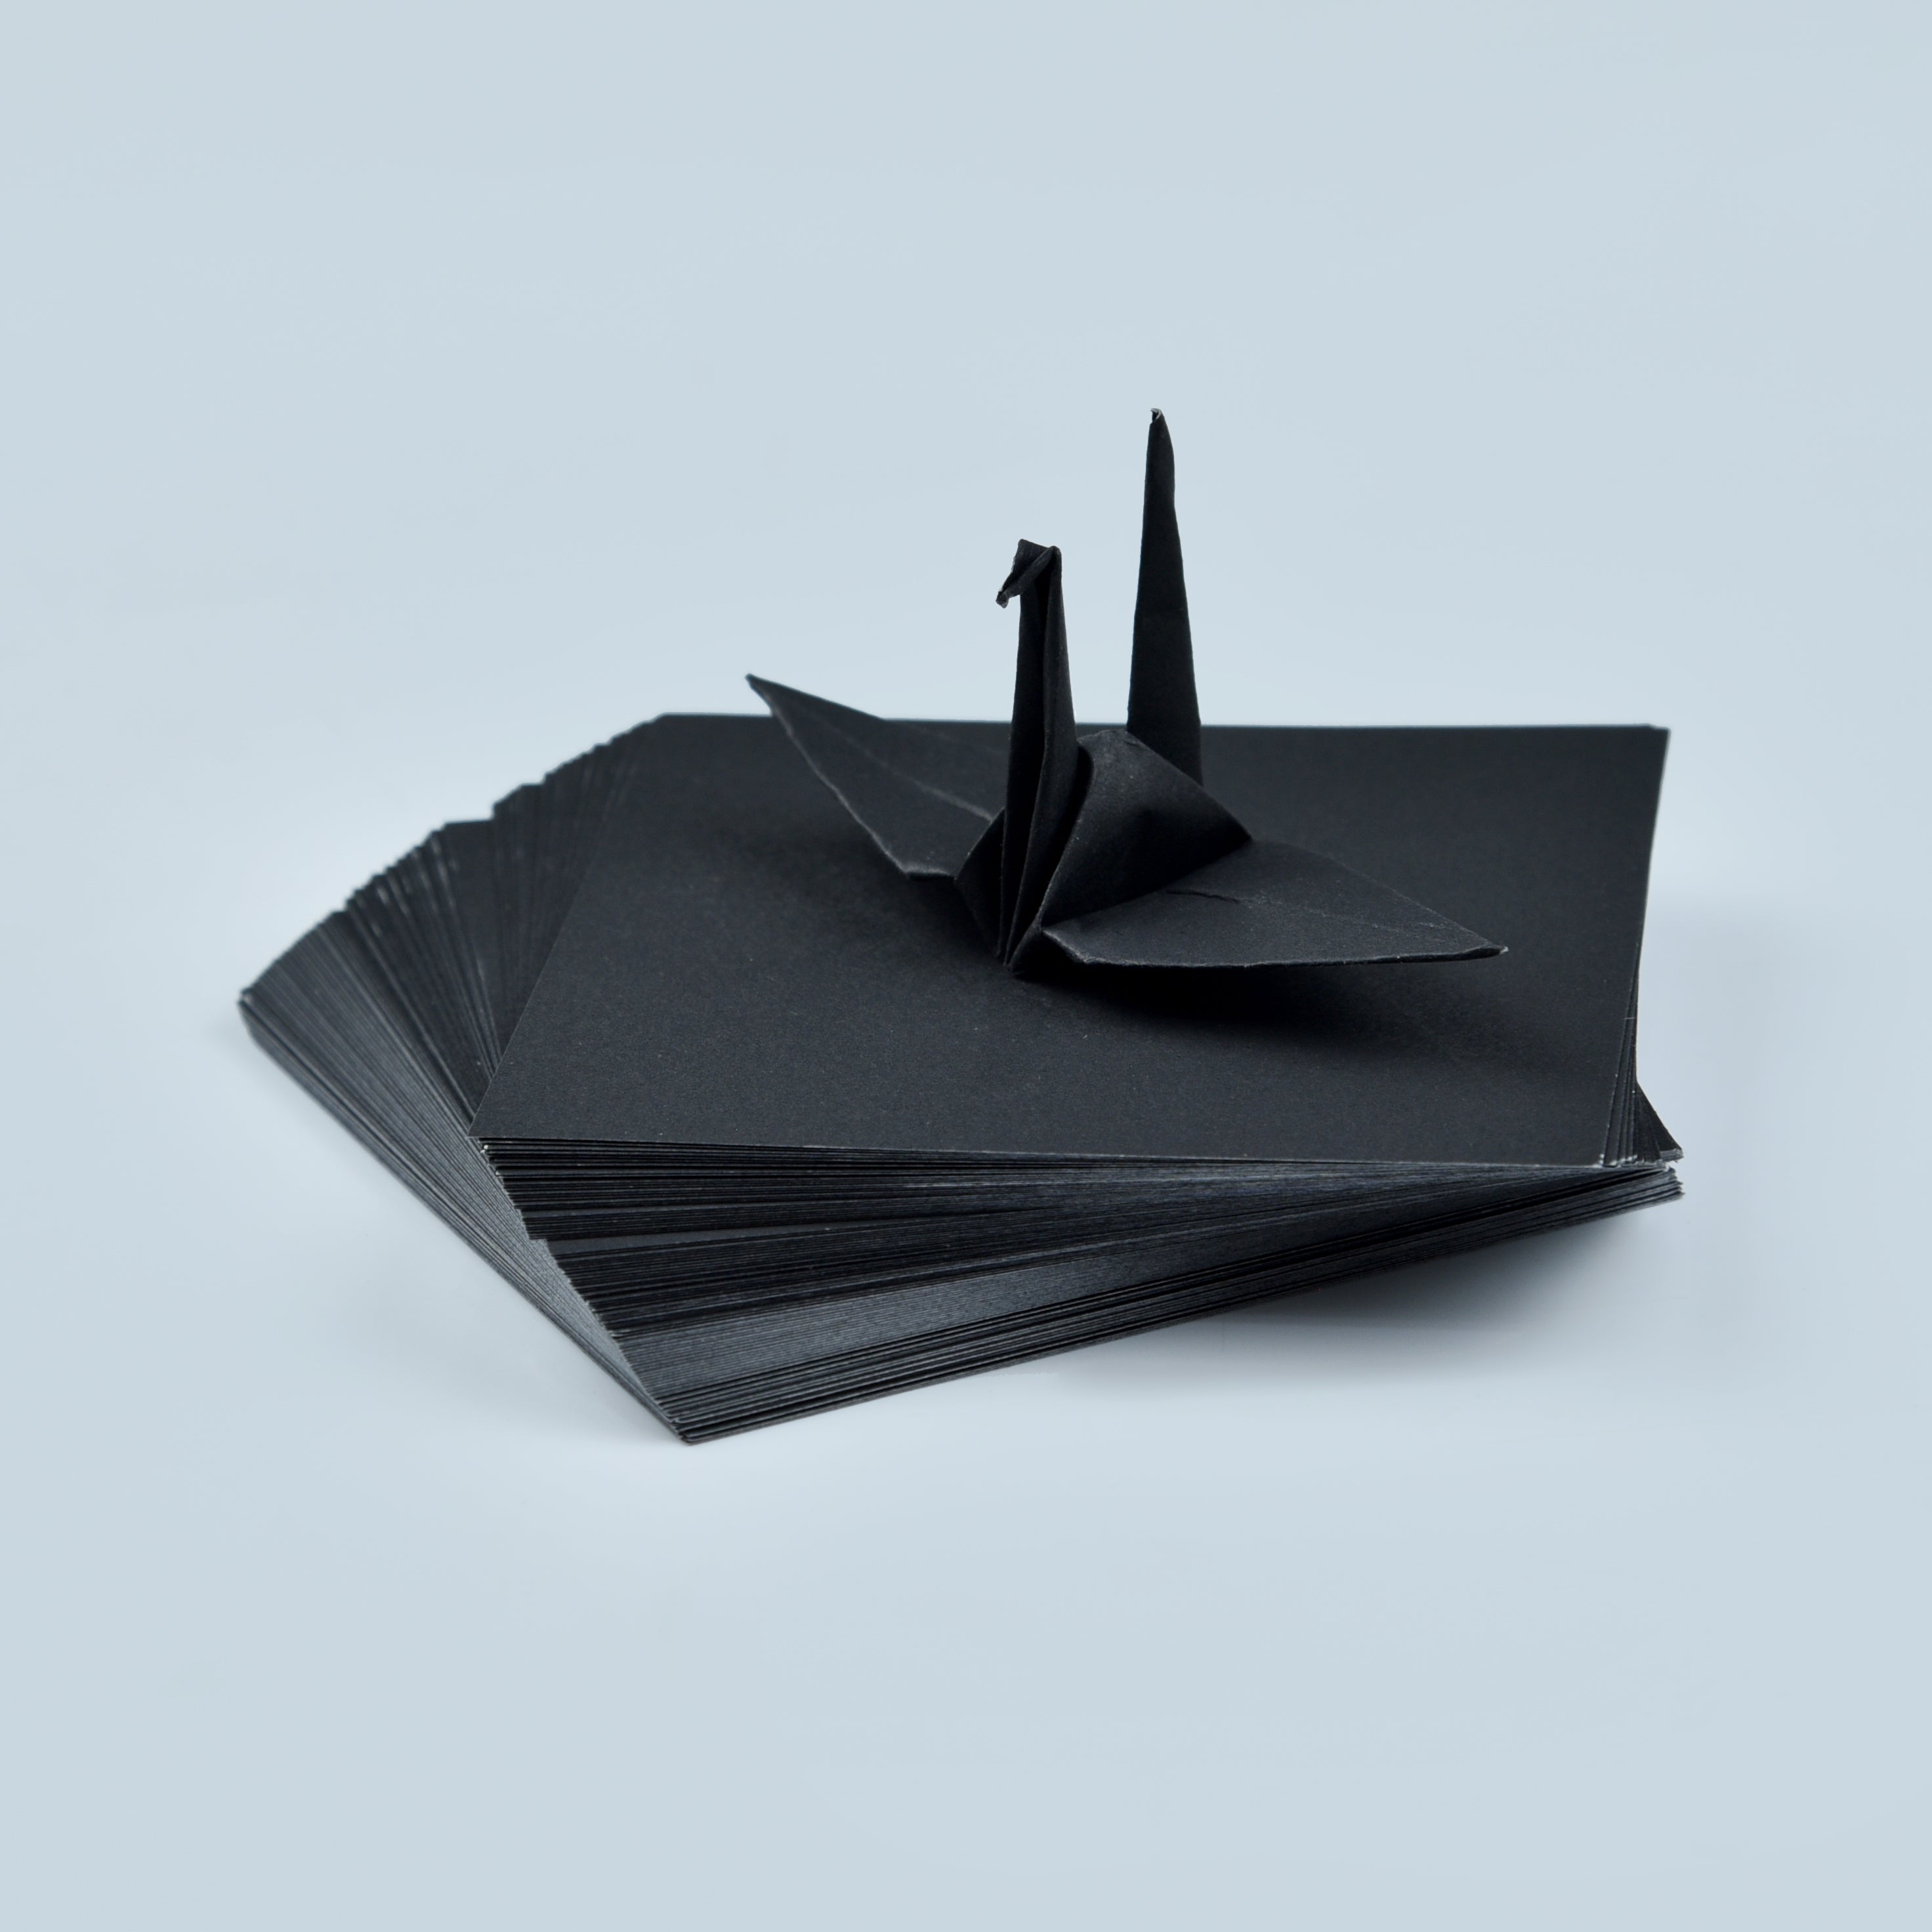 100 fogli di carta origami neri - 3x3 pollici - Confezione di carta quadrata per piegare, gru origami e decorazioni - S11